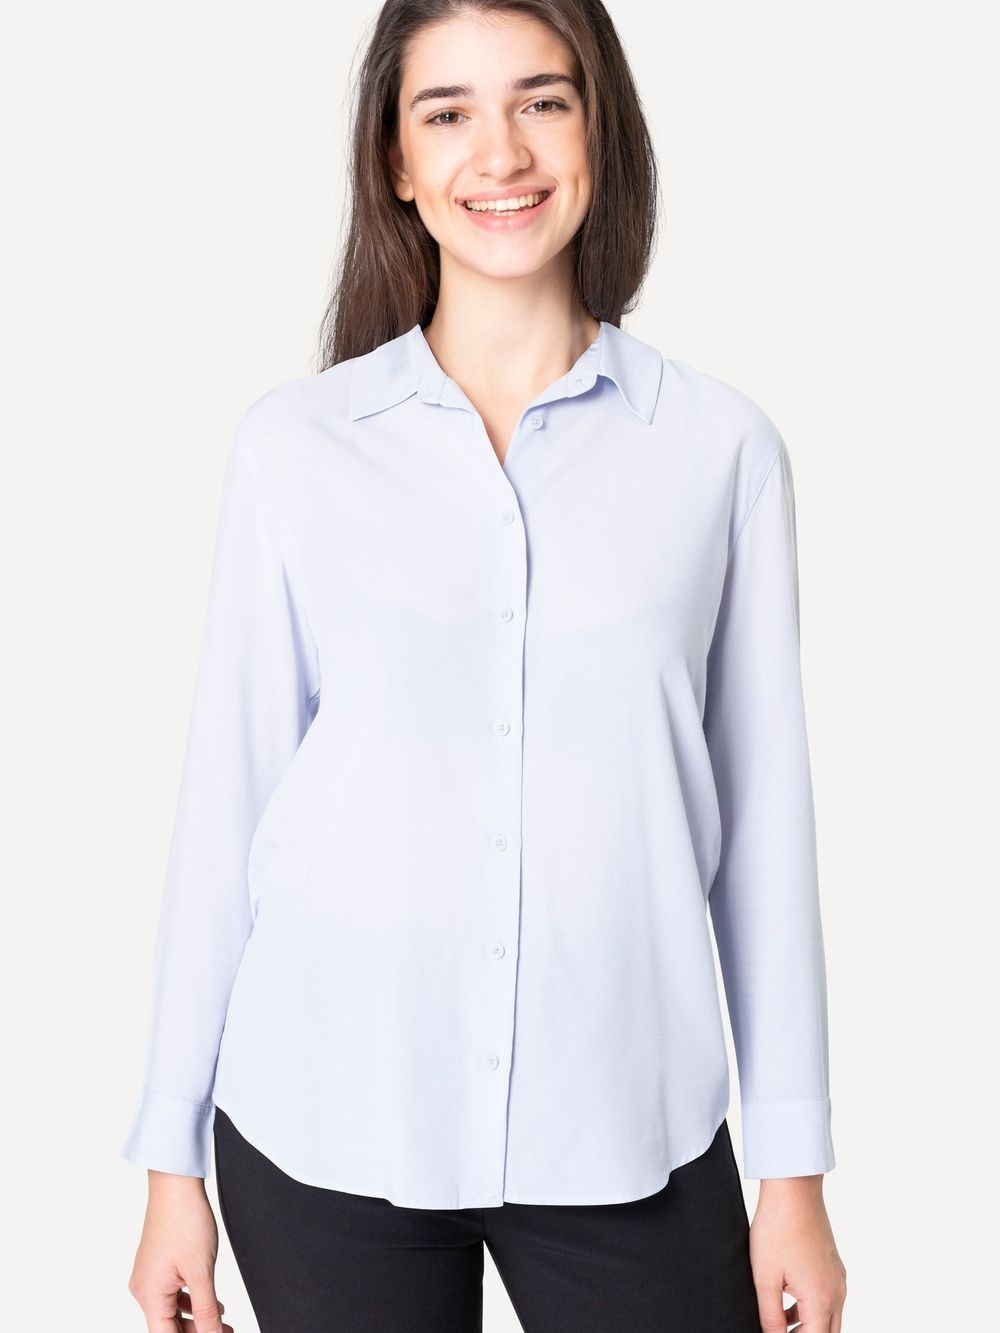 Collar Shirt in Light Blue